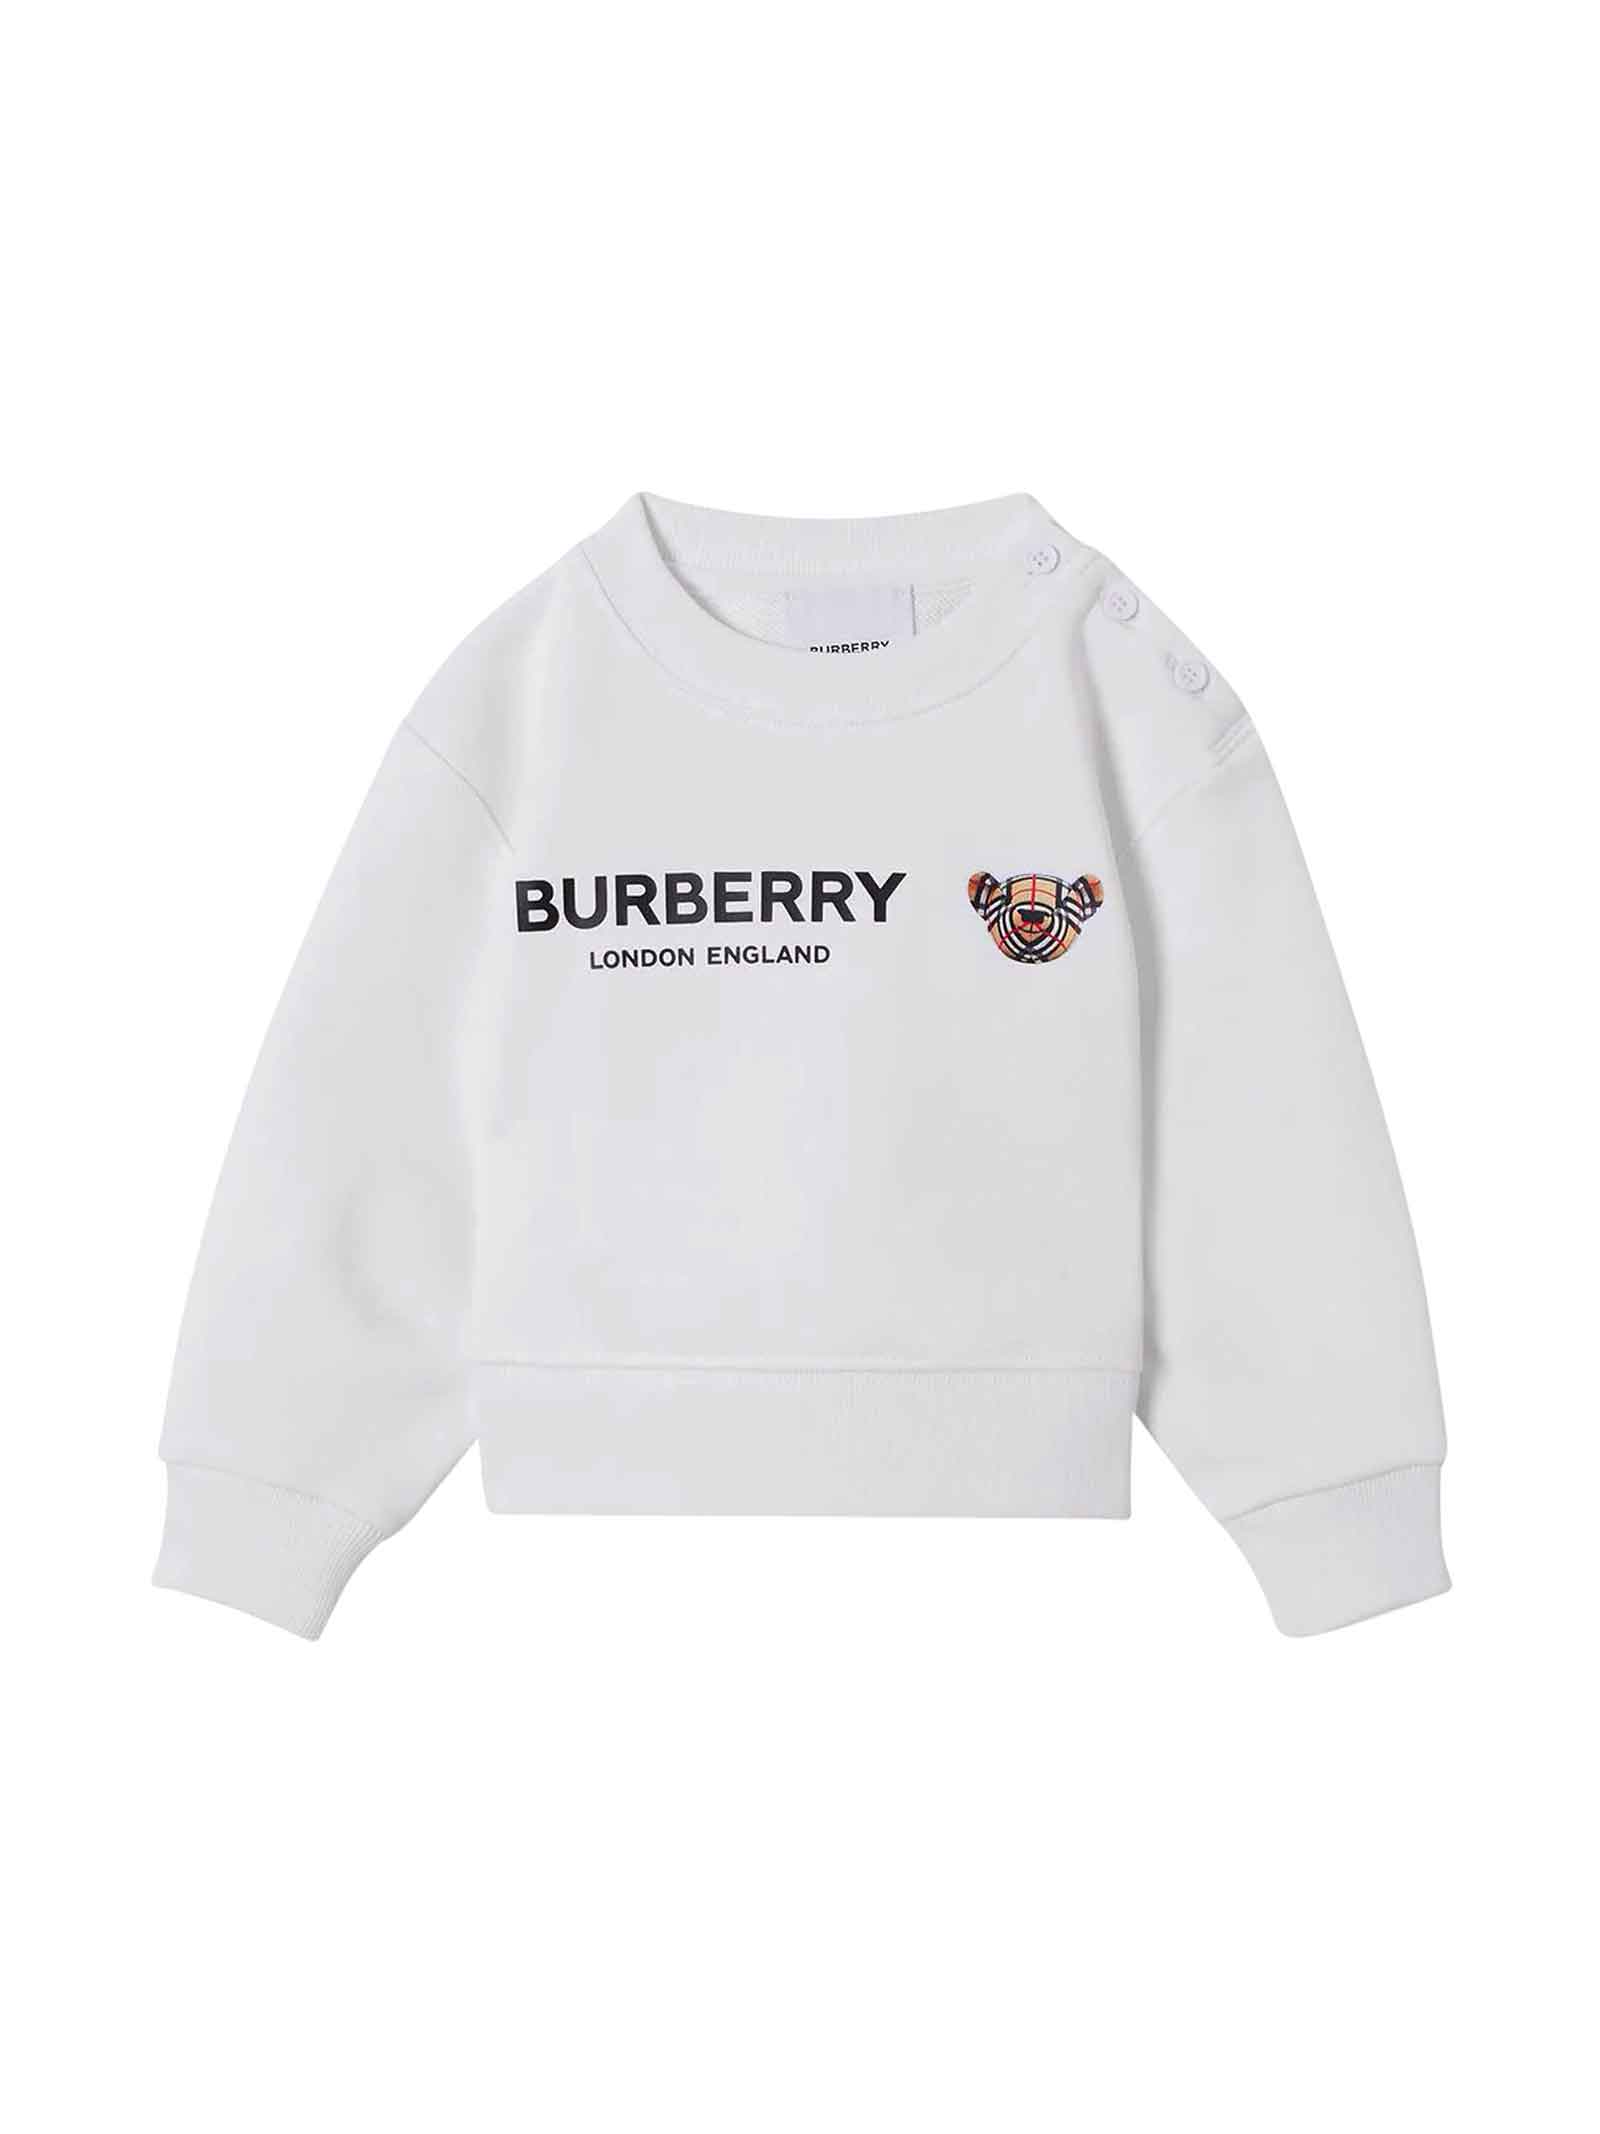 Burberry White Sweatshirt Baby